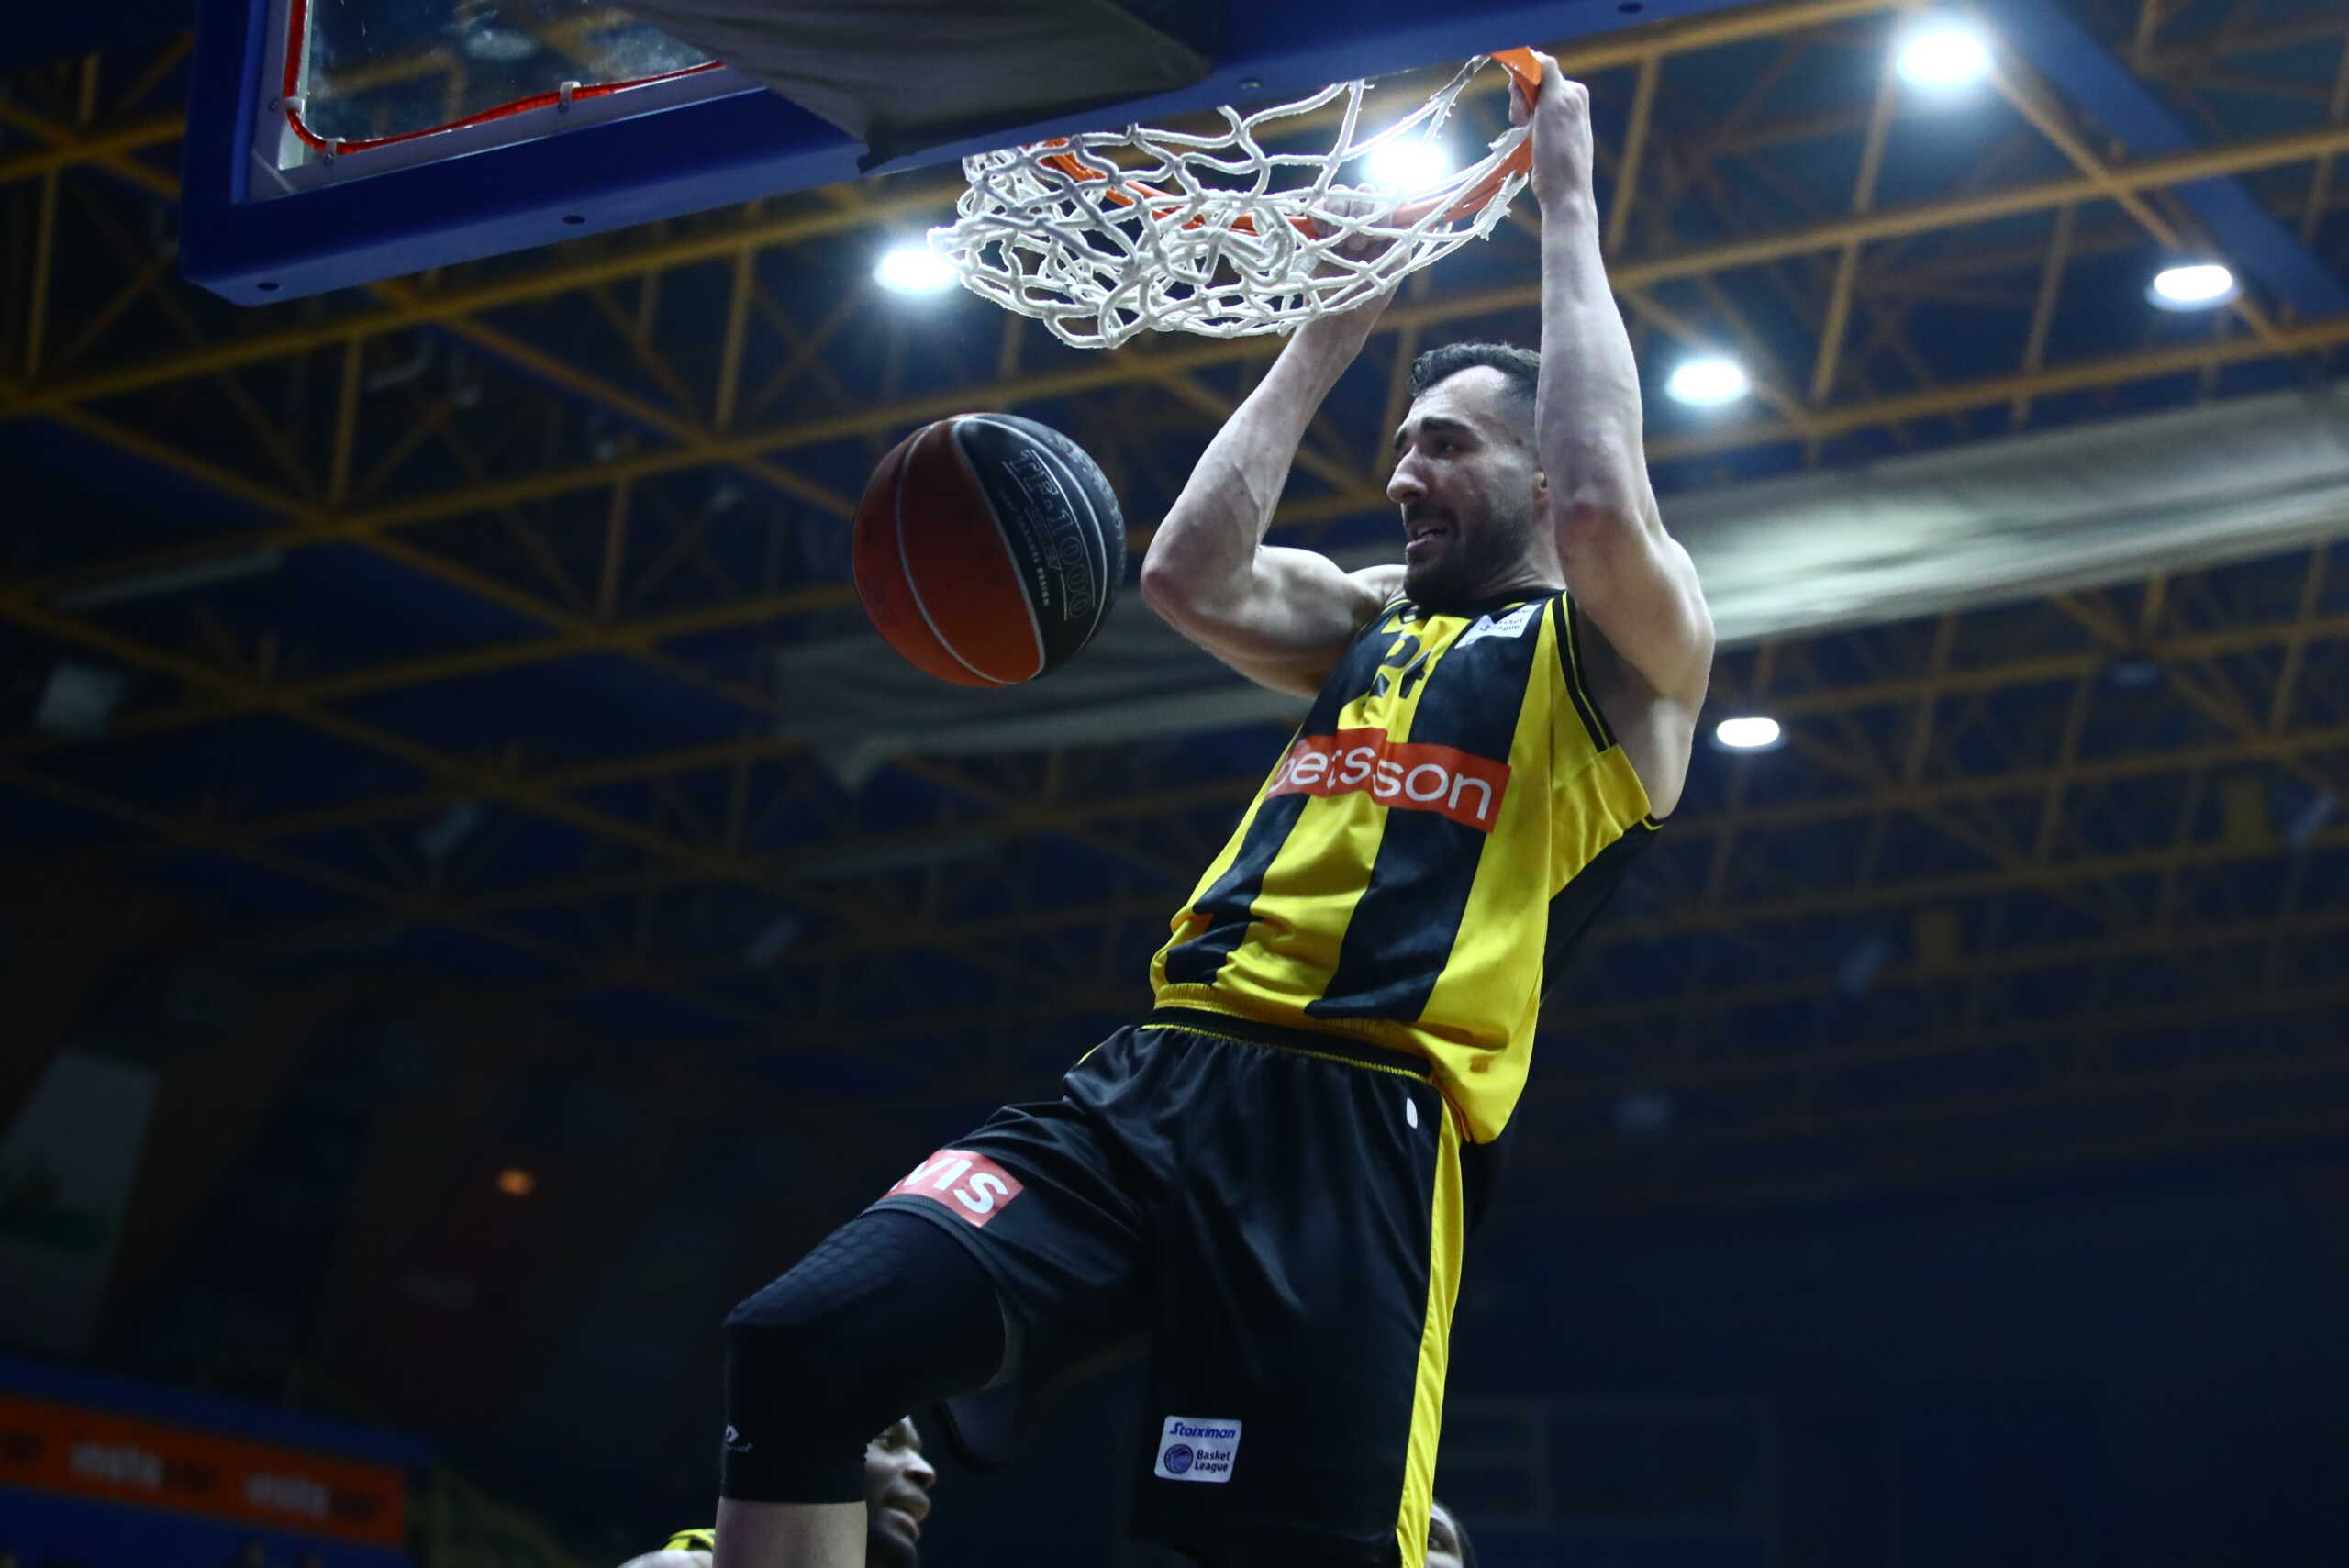 ΑΕΚ: Ολοκλήρωσε τον πρώτο γύρο της Basket League χωρίς εκτός έδρας νίκη